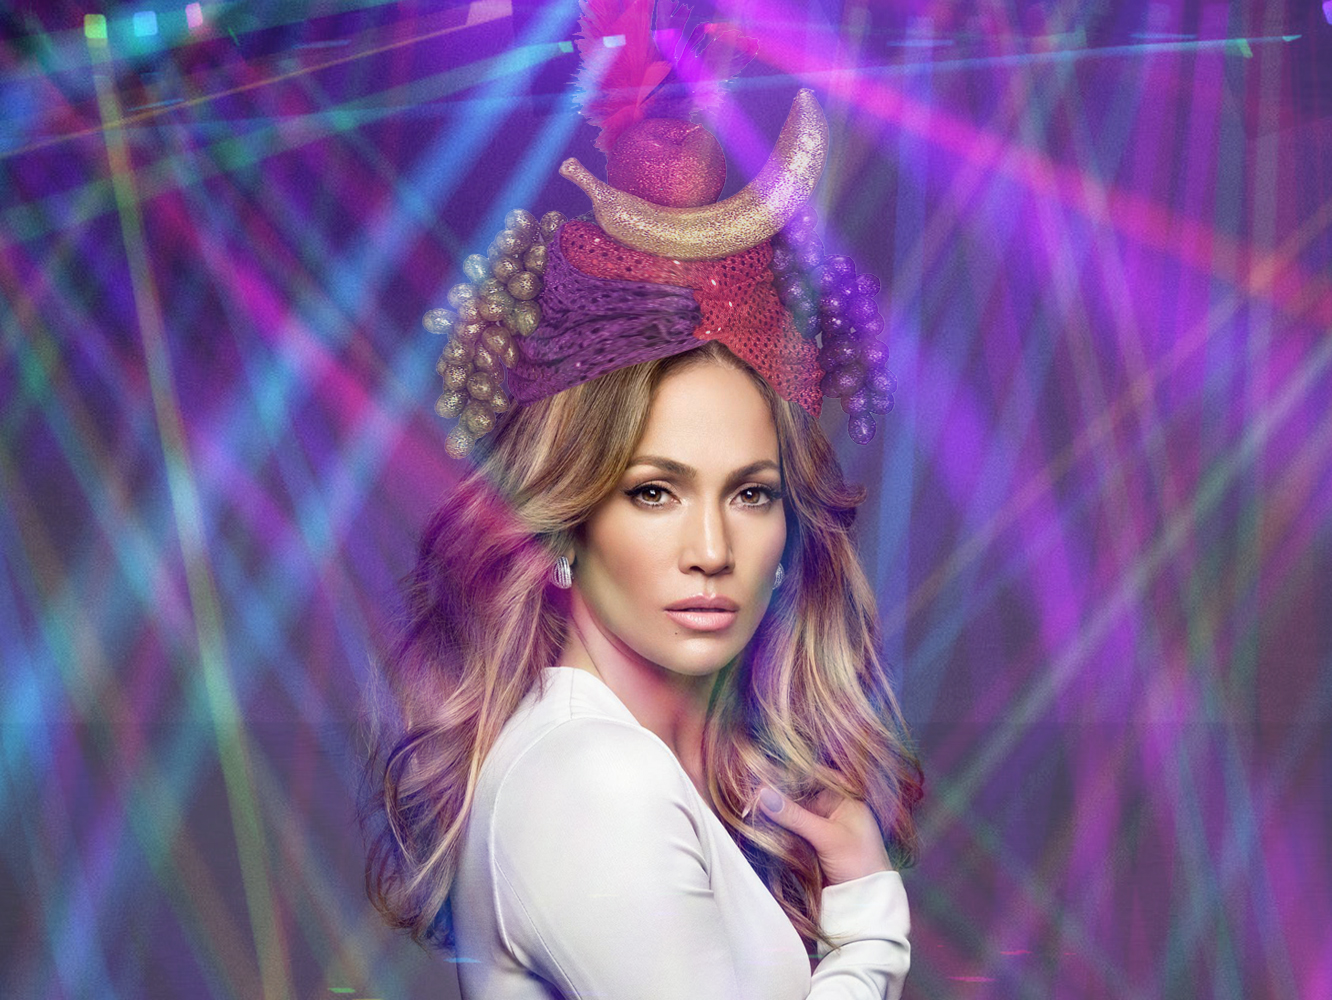  Jennifer Lopez aparca el español y lanza ‘Us’, producida por Skrillex